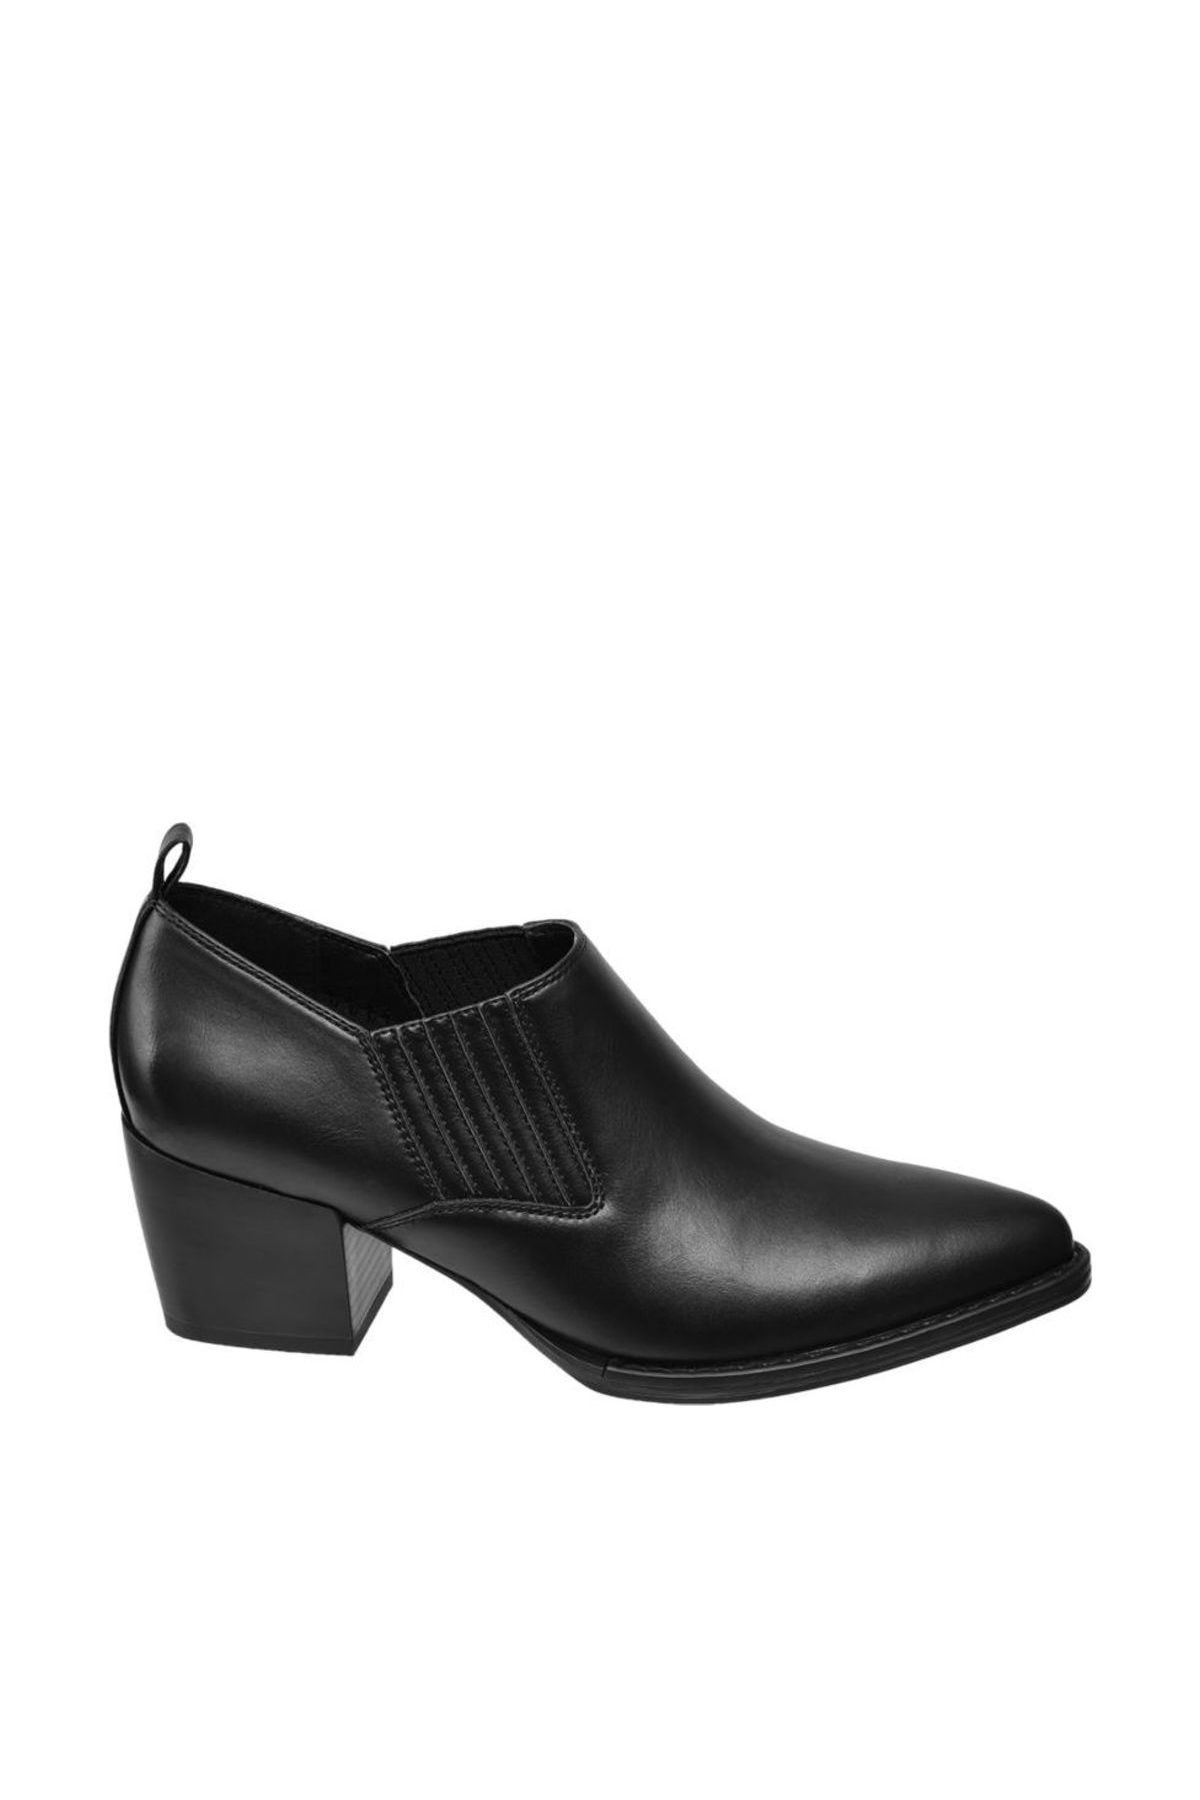 Catwalk Deichmann Kadın Siyah Klasik Topuklu Ayakkabı